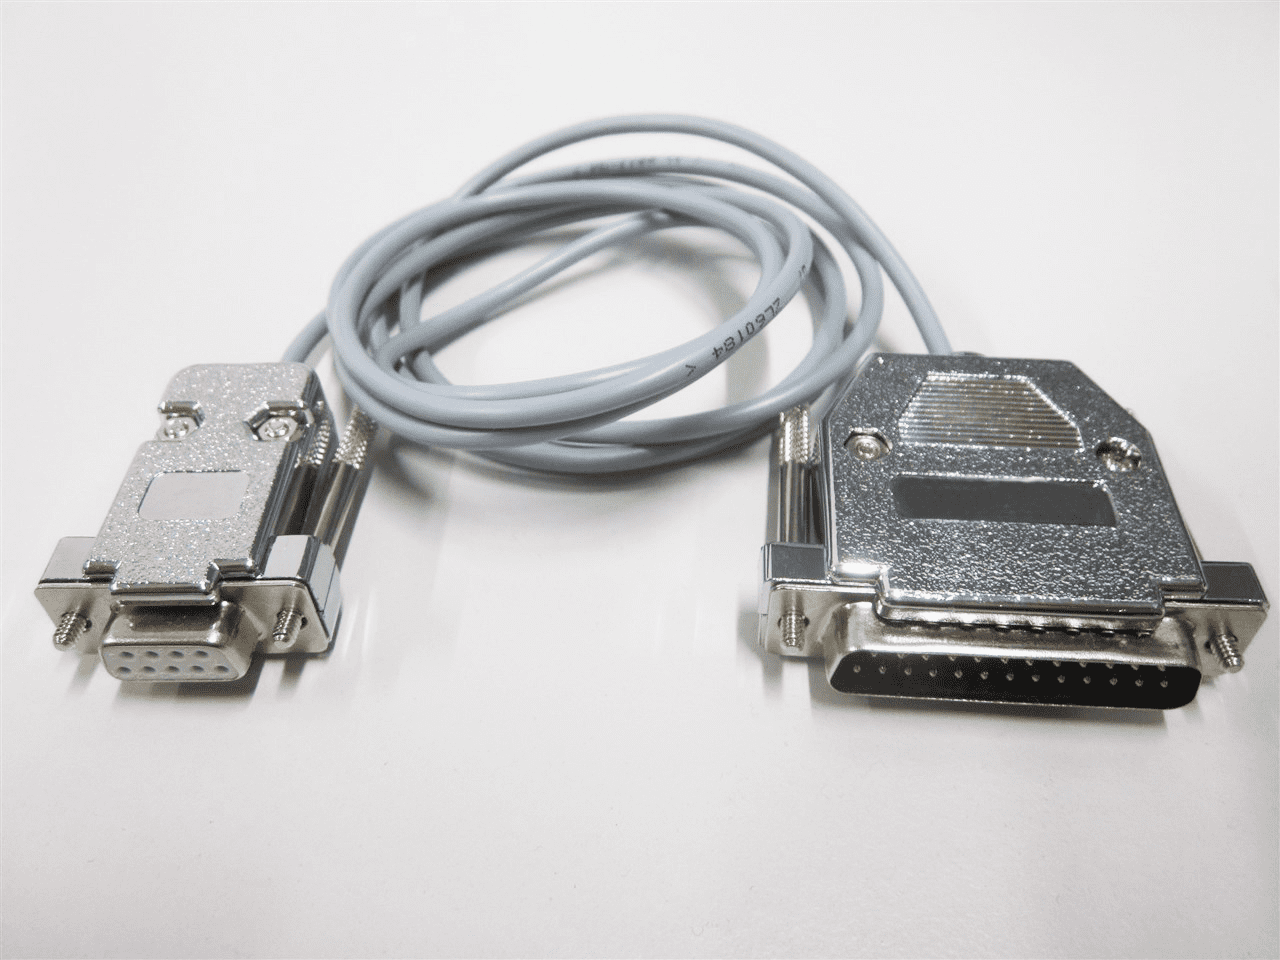 Aufgerolltes, graues Schnittstellenkabel auf weißem Hintergrund. An beiden Enden ist ein HDMI-Stecker, eins weiblich und eins männlich.